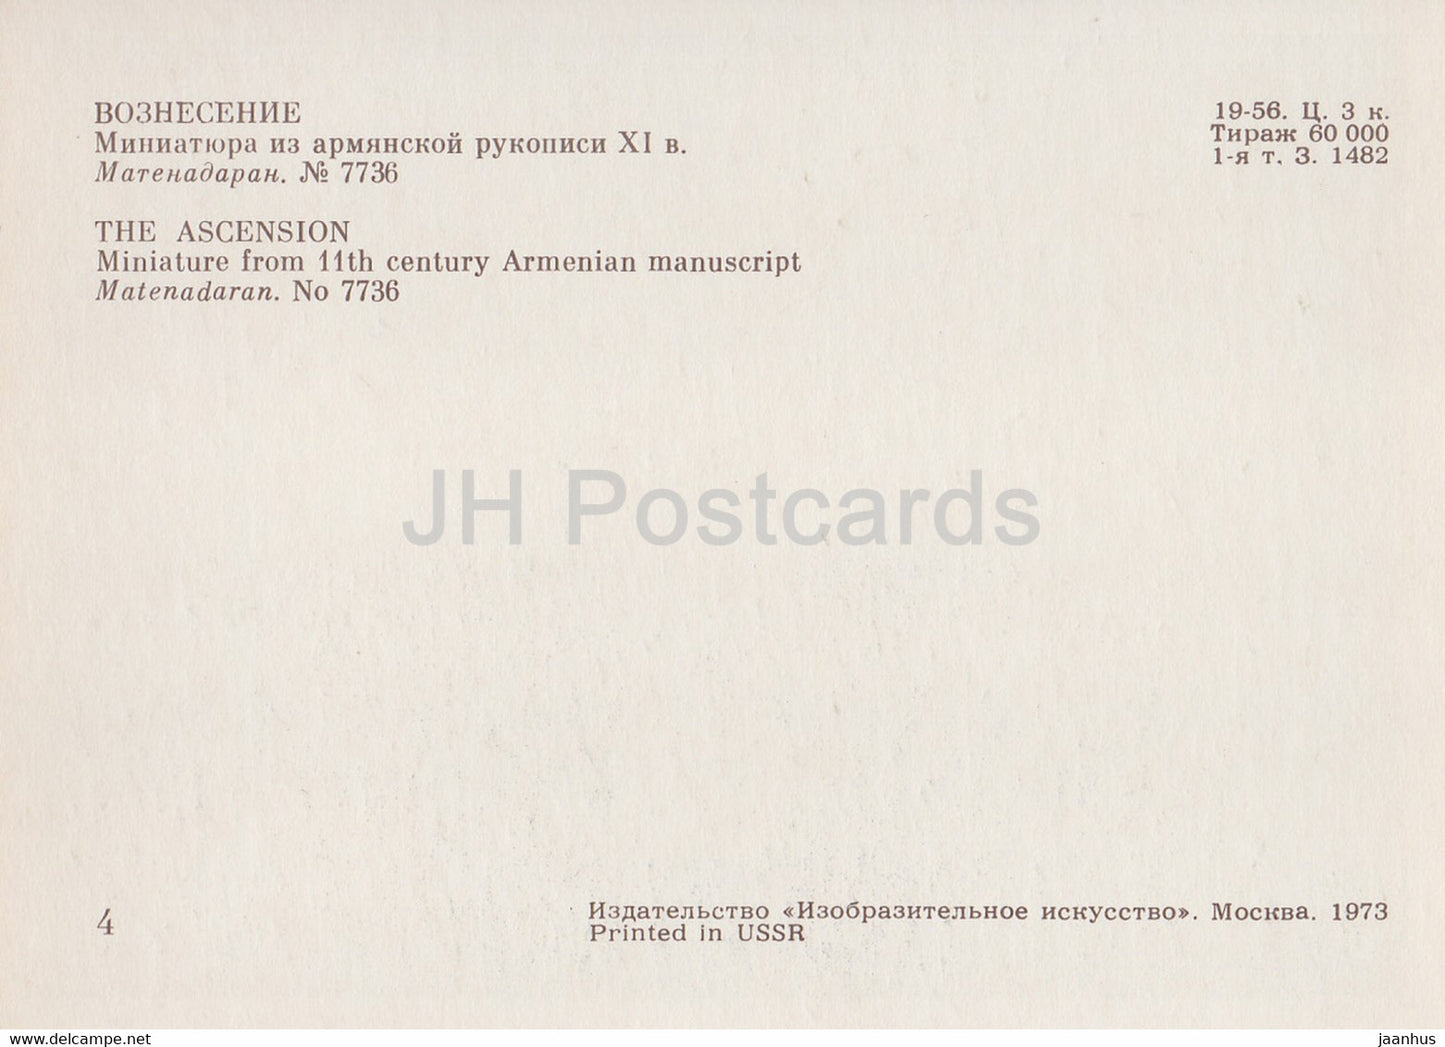 Miniaturen in armenischen Manuskripten – Die Himmelfahrt – Matenadaran – Armenien – 1973 – Russland UdSSR – unbenutzt